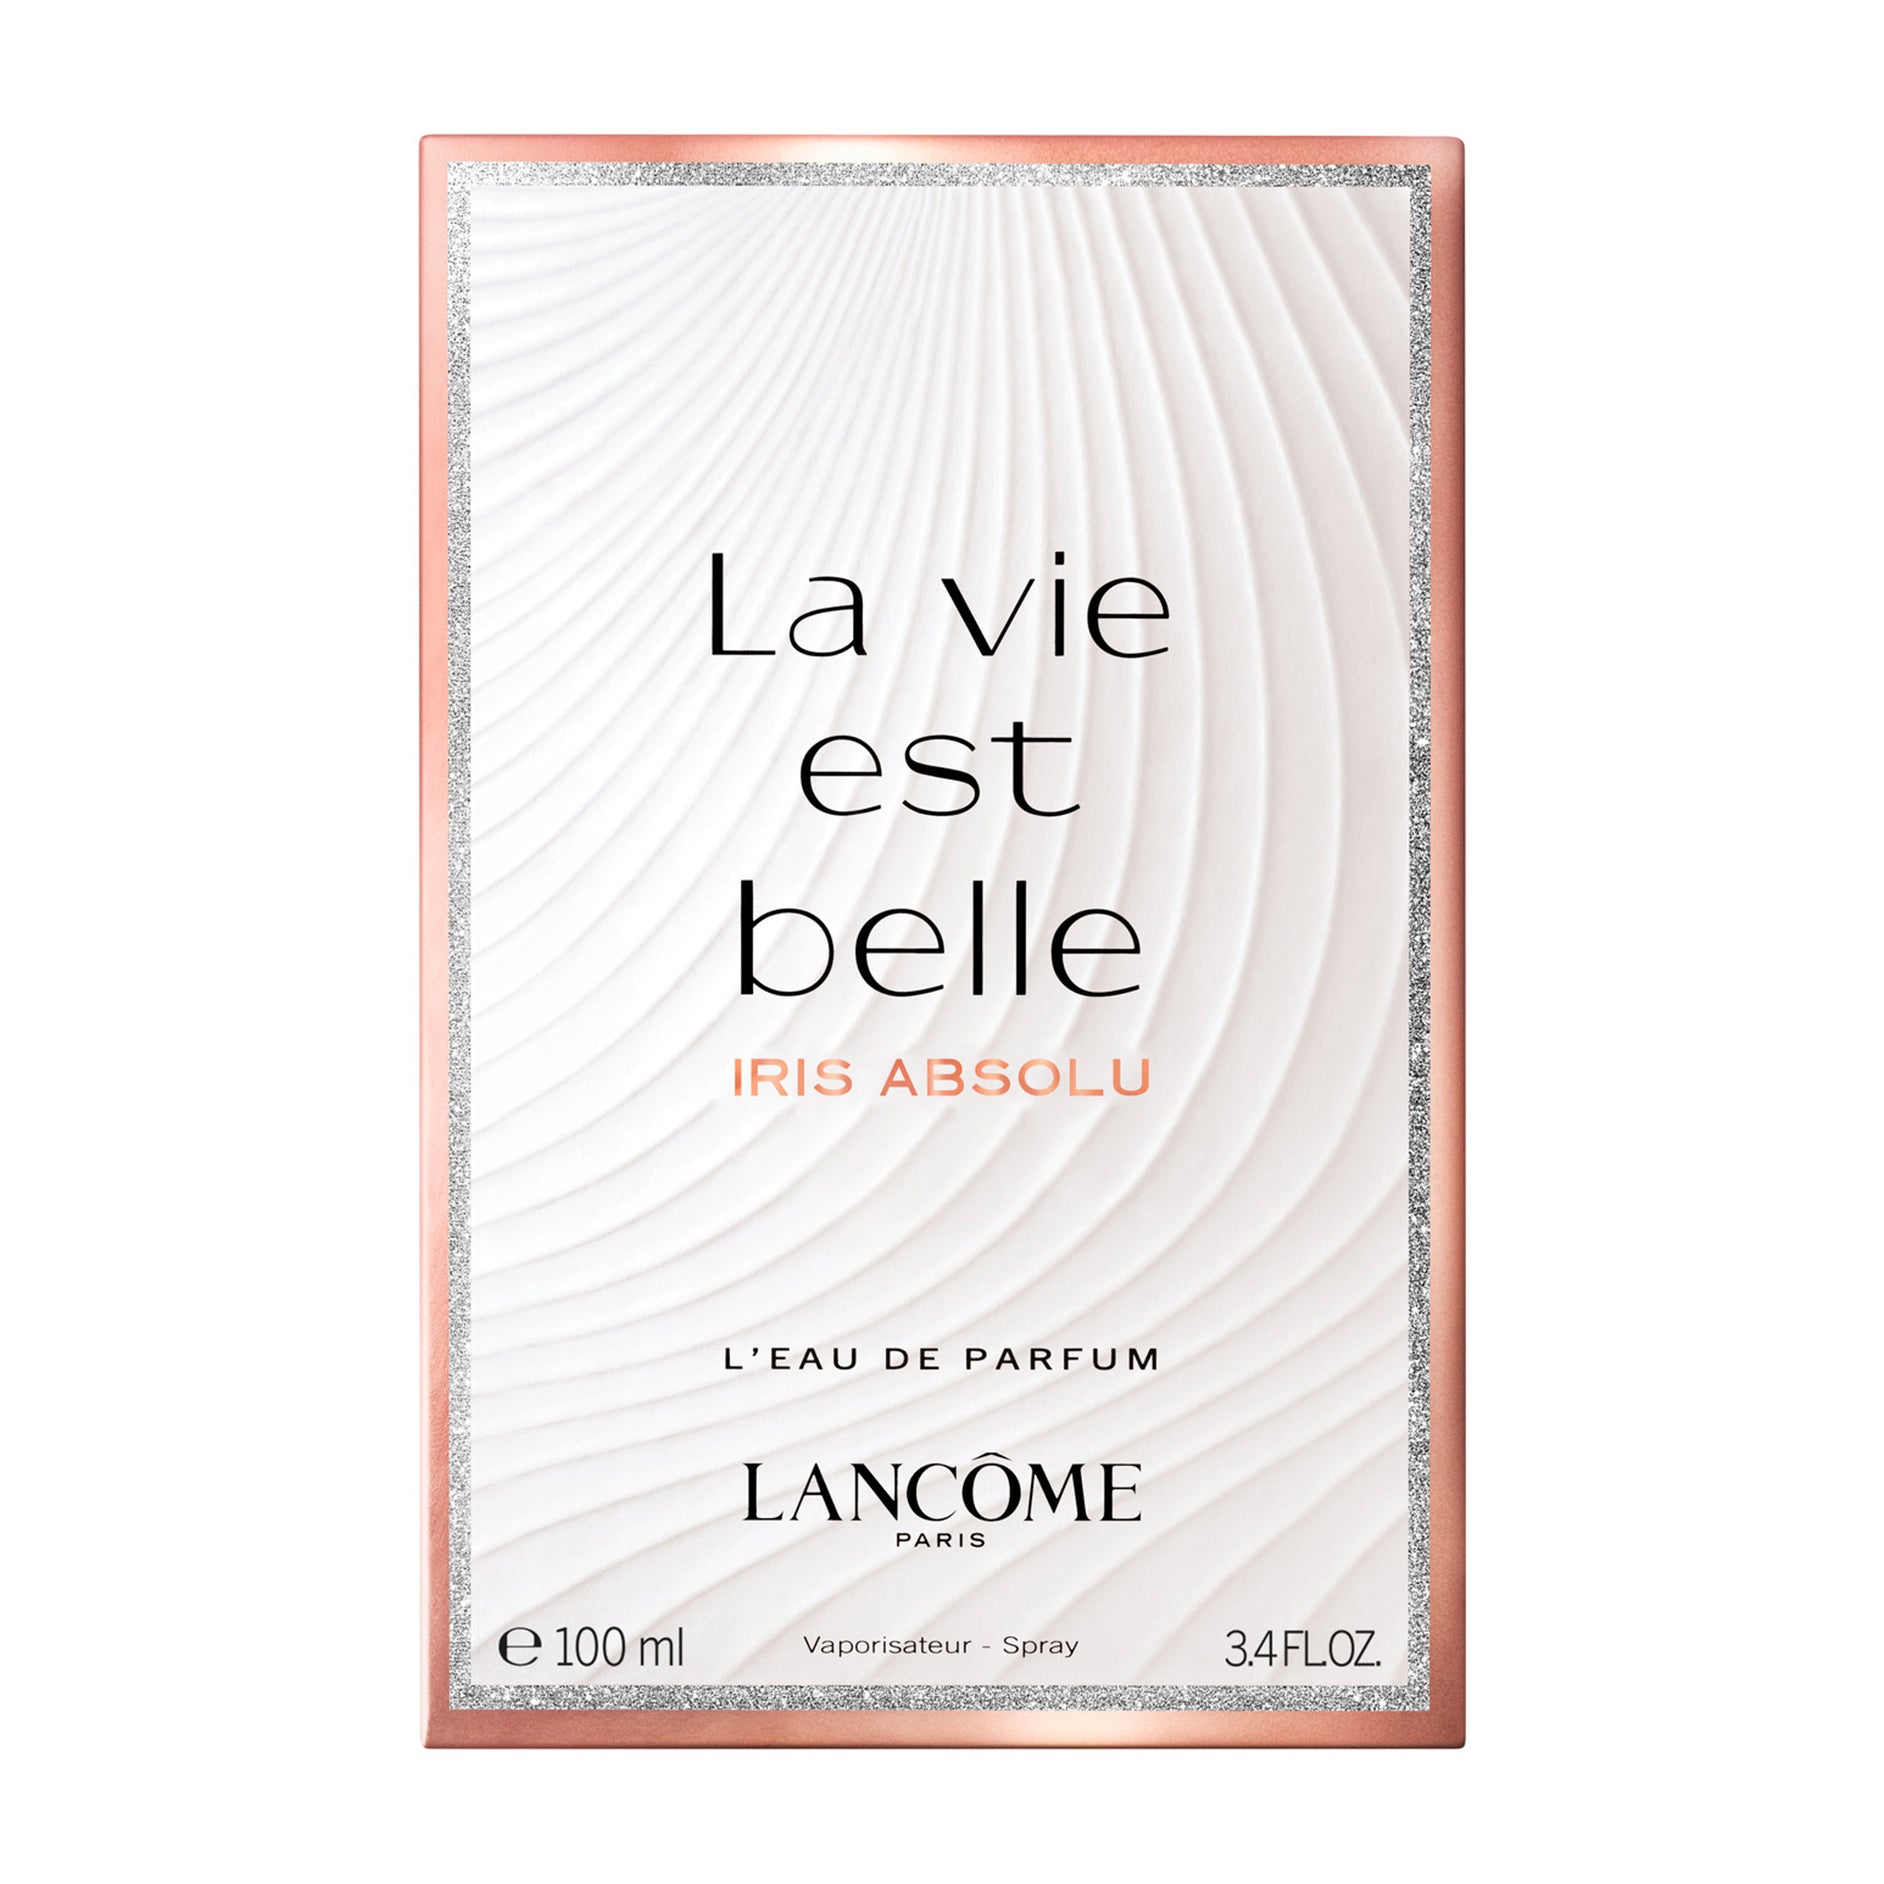 Lancome La Vie Est Belle Lris Absolu EDP For Women - Bloom Pharmacy